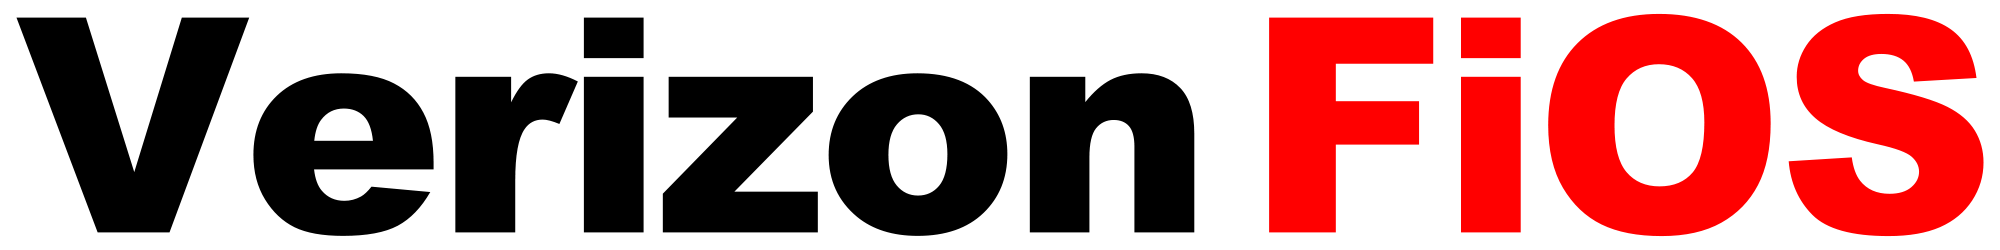 FiOS Logo - Verizon FiOS logo.svg